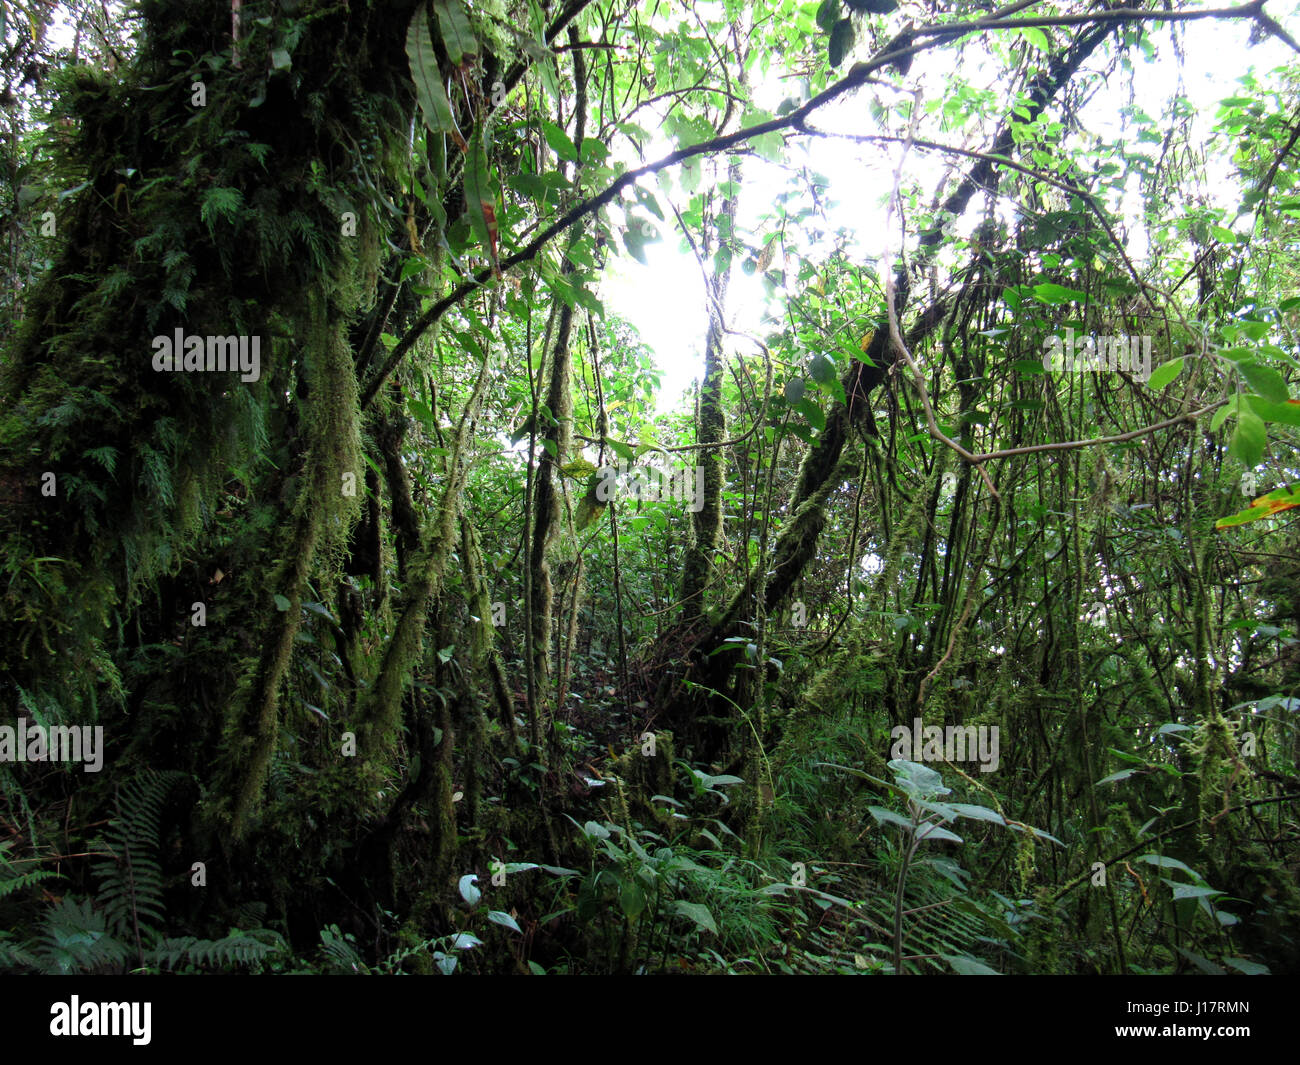 view of mossy trees inside rain forest Podocarpus National Park Ecuador Stock Photo